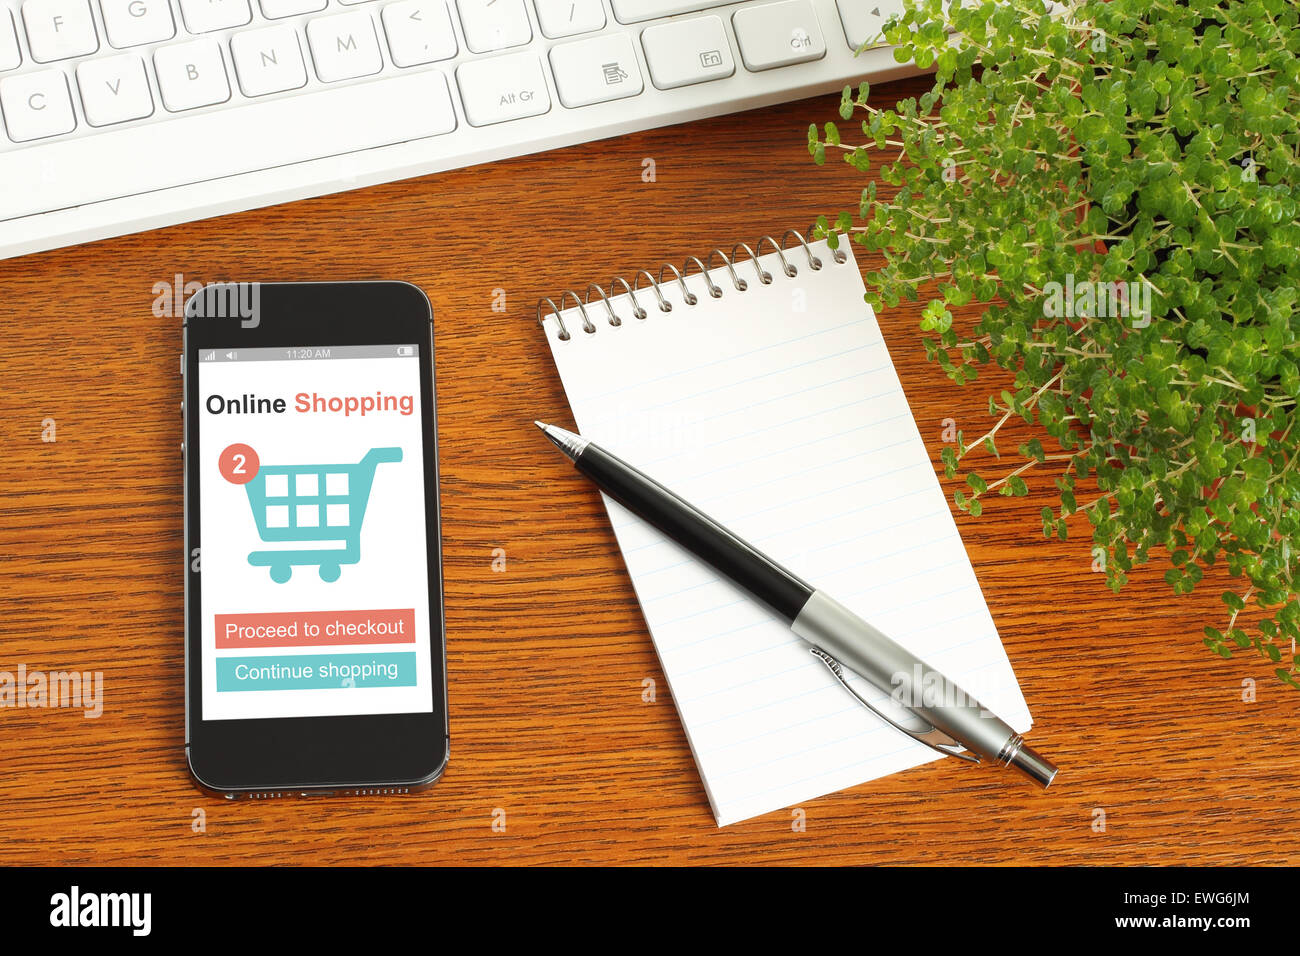 Smartphone mit Online-shopping-Konzept, Tastatur, Notizblock, Stift und Grünpflanze auf hölzernen Hintergrund Stockfoto